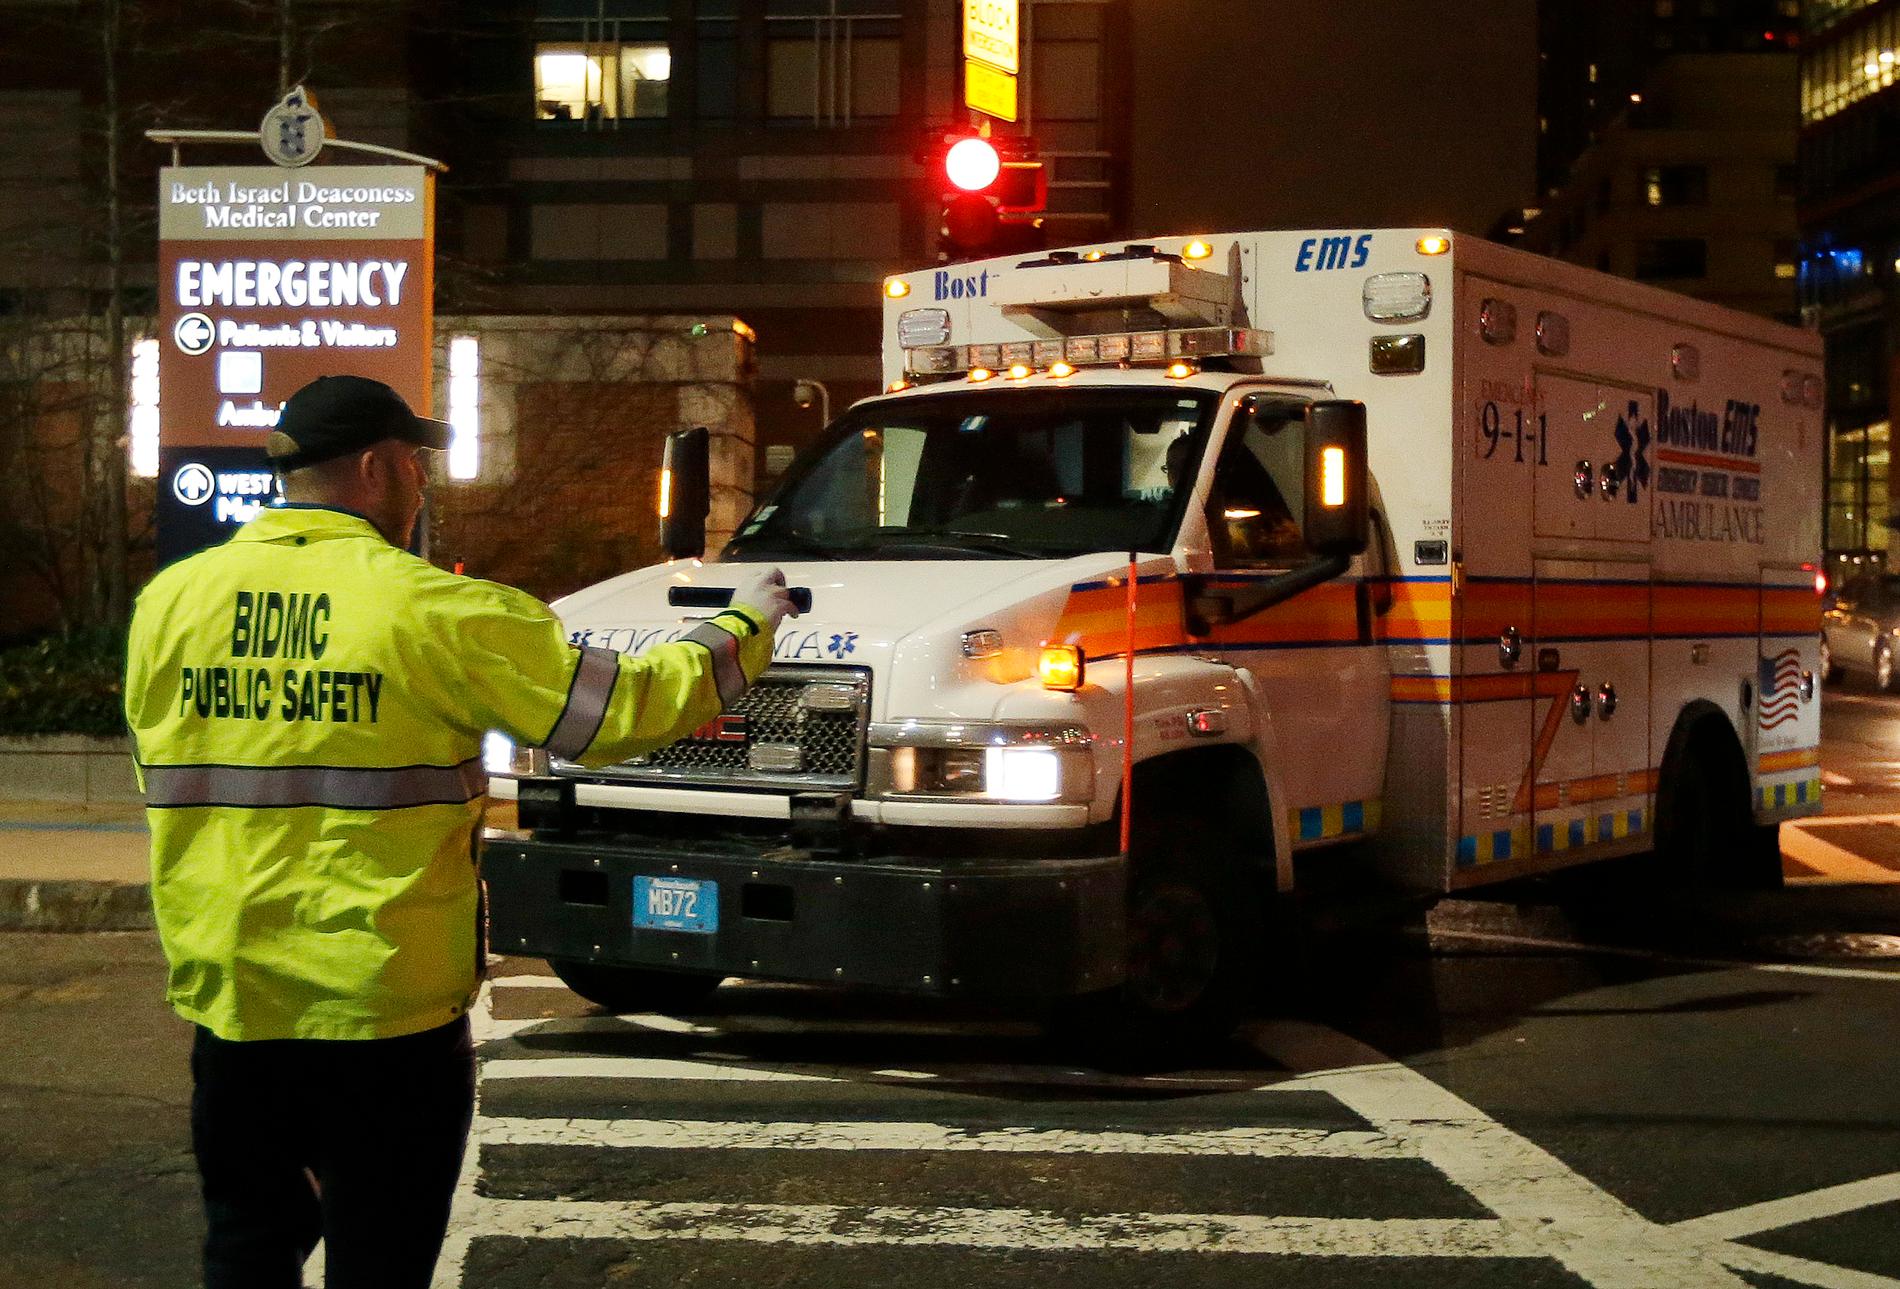 Dzjochar Tsarnajev, 19, greps efter ett enormt sökpådrag. Här förs han till sjukhus i ambulans.